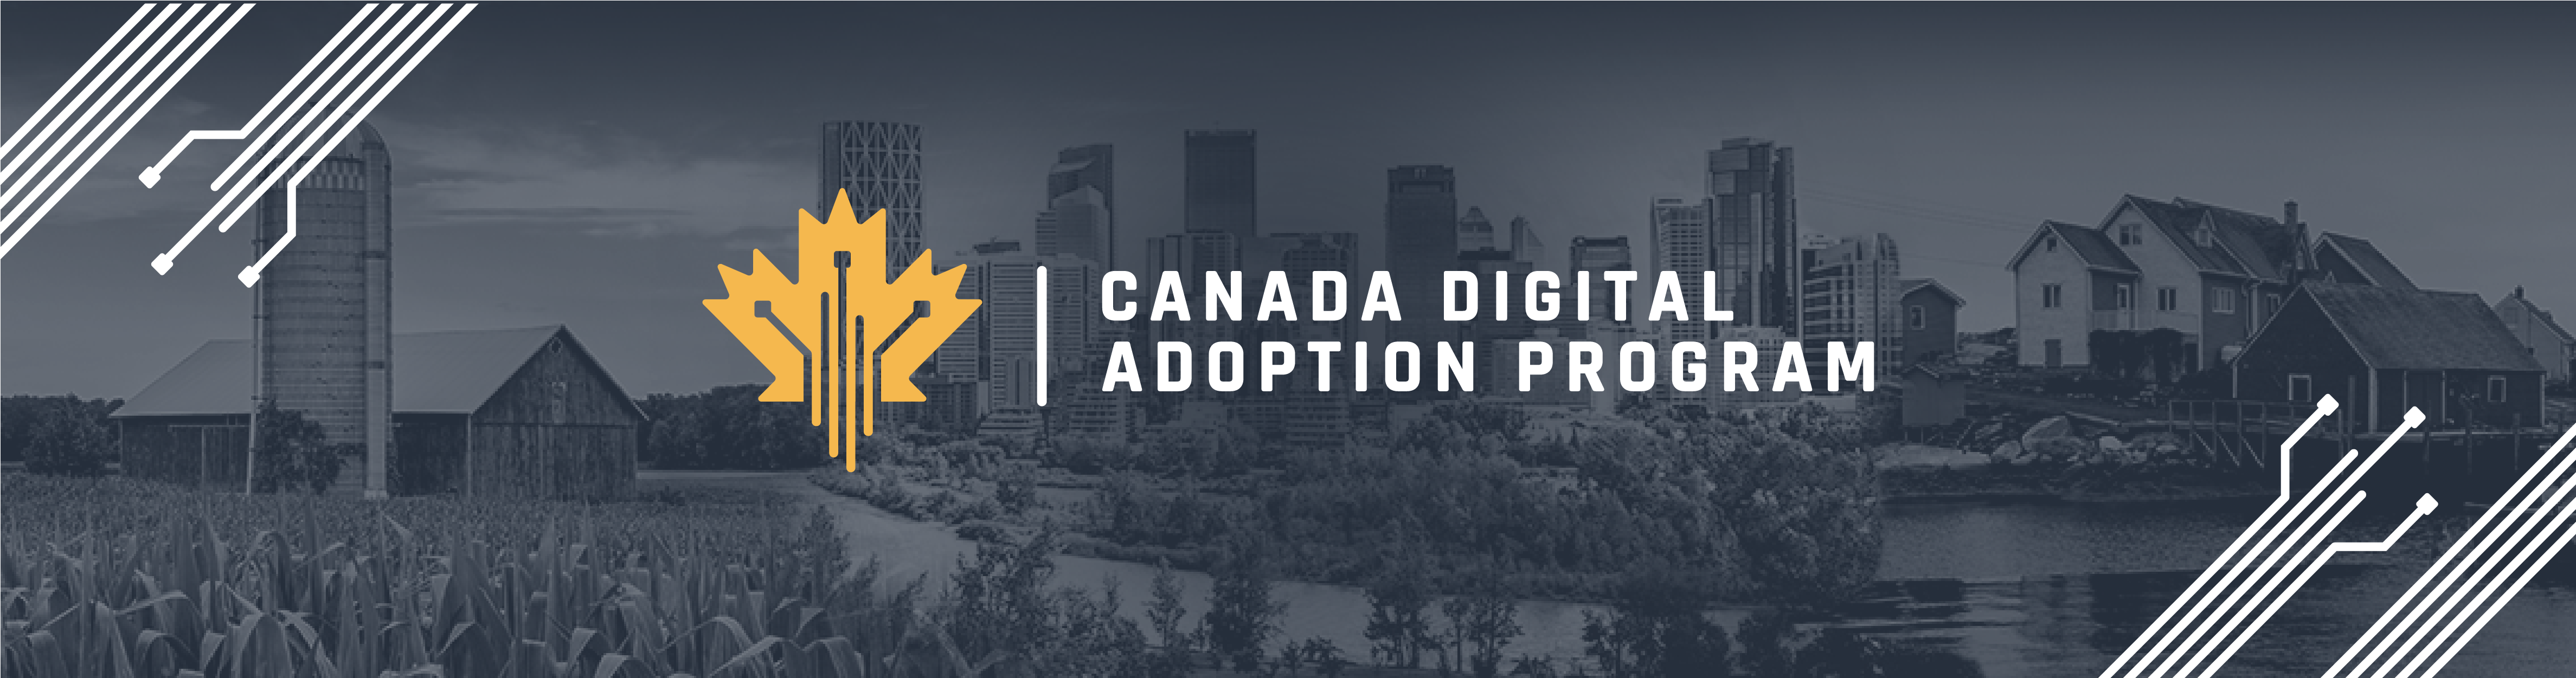 Canada Digital Adoption Program - Approved Digital Advisor